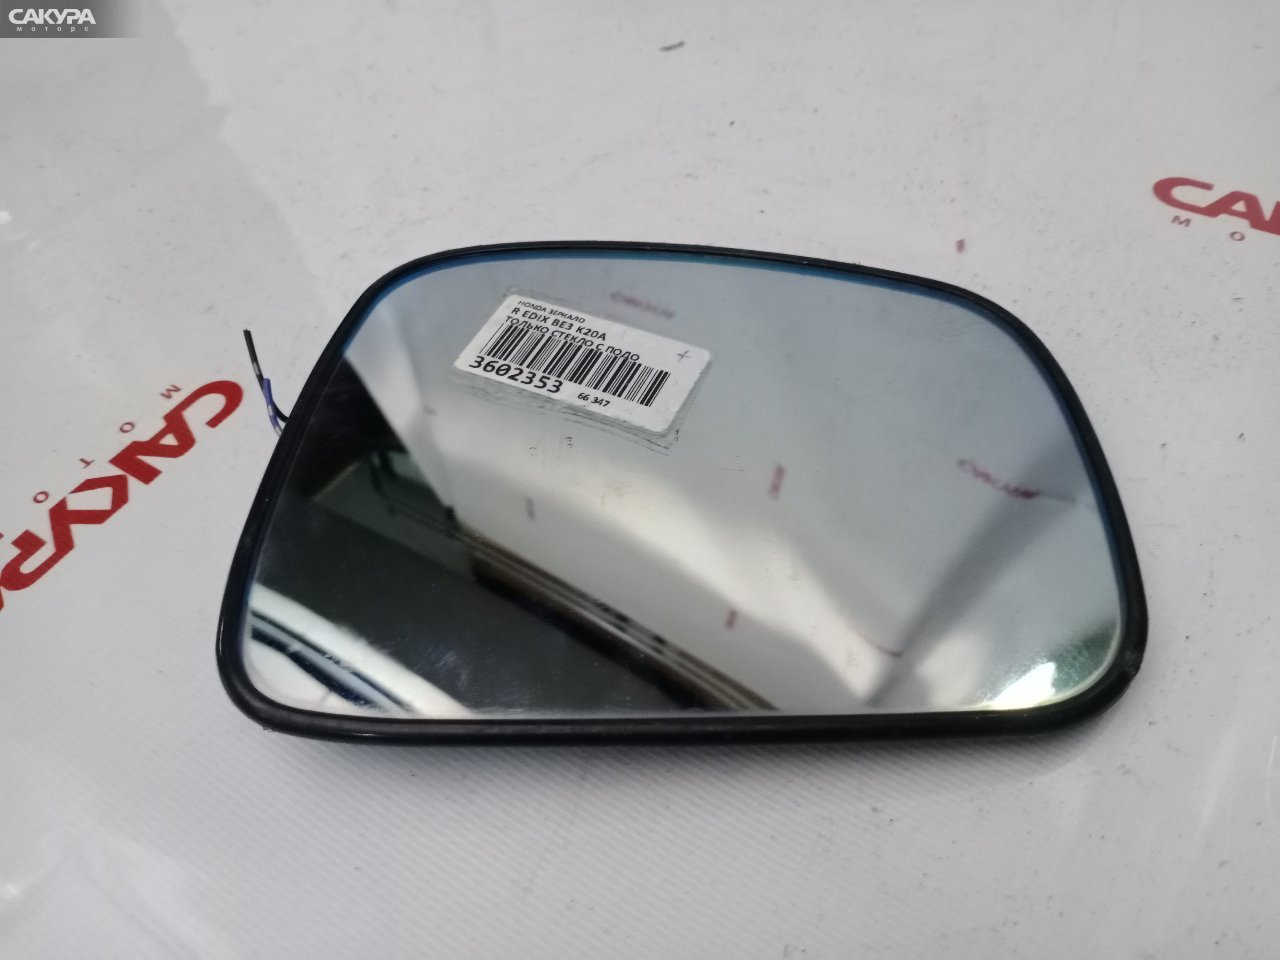 Зеркало боковое правое Honda Edix BE3 K20A: купить в Сакура Красноярск.